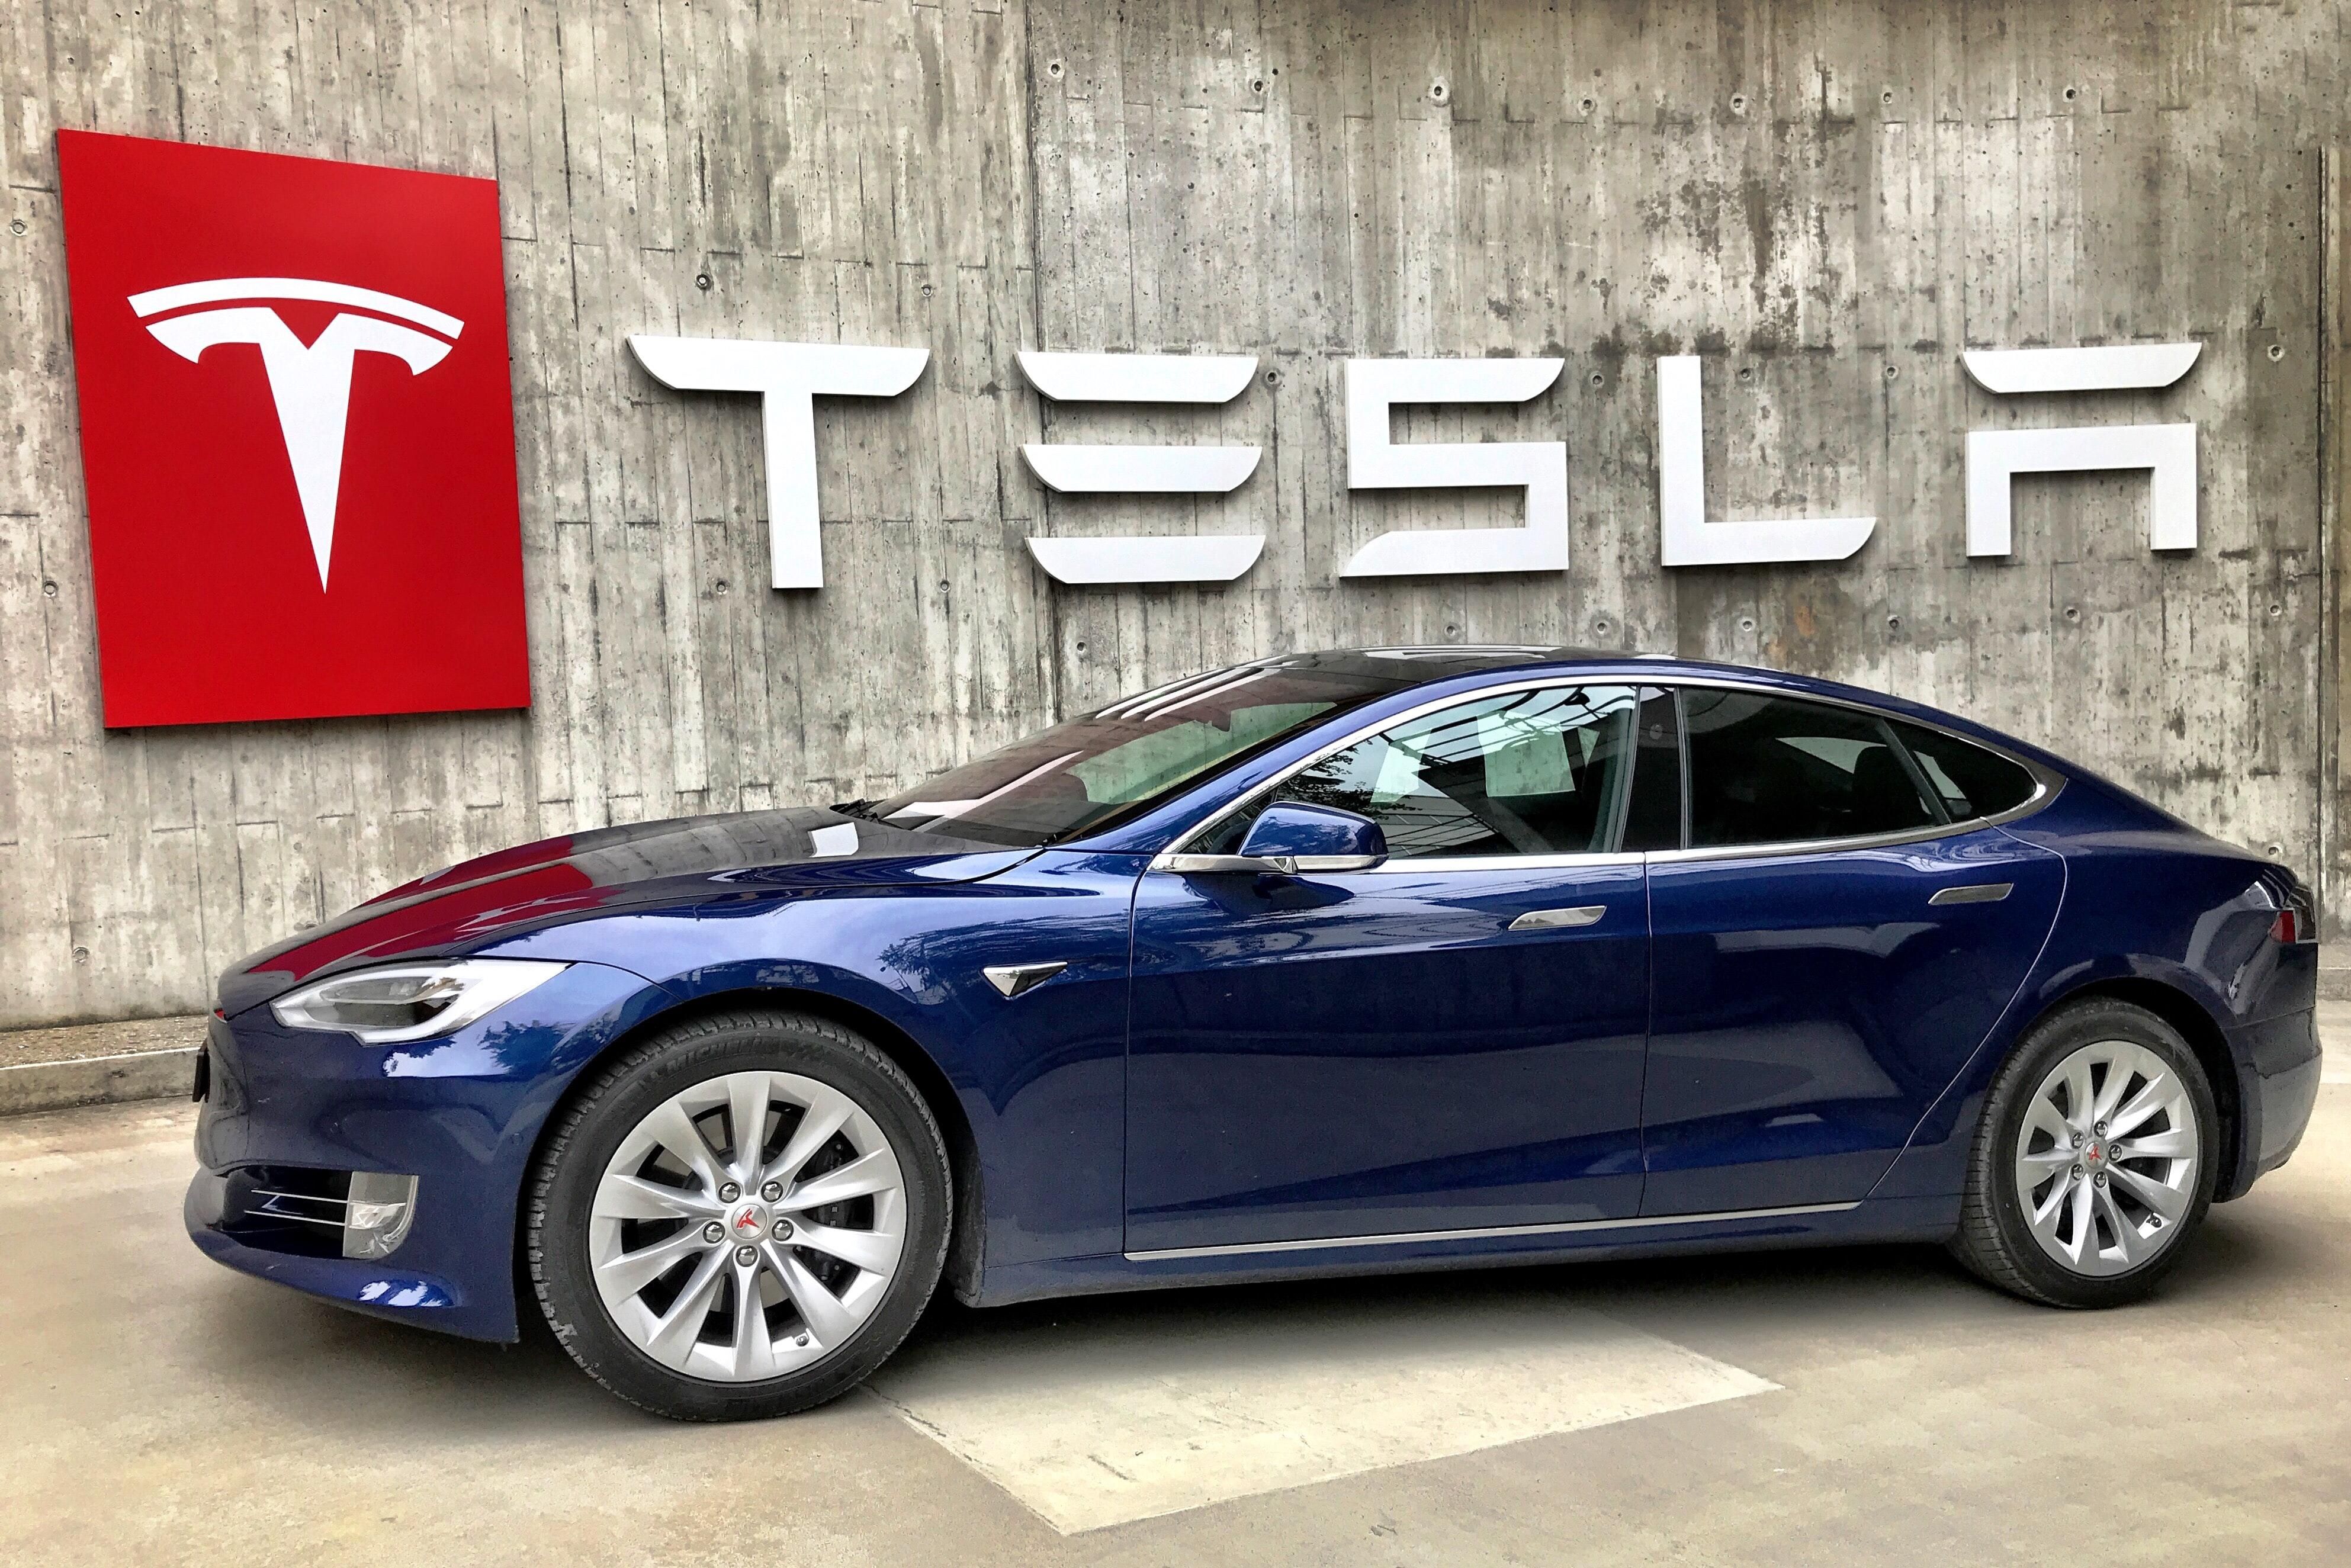 Kék színű, önvezetésre képes Tesla a Tesla emblémája előtt